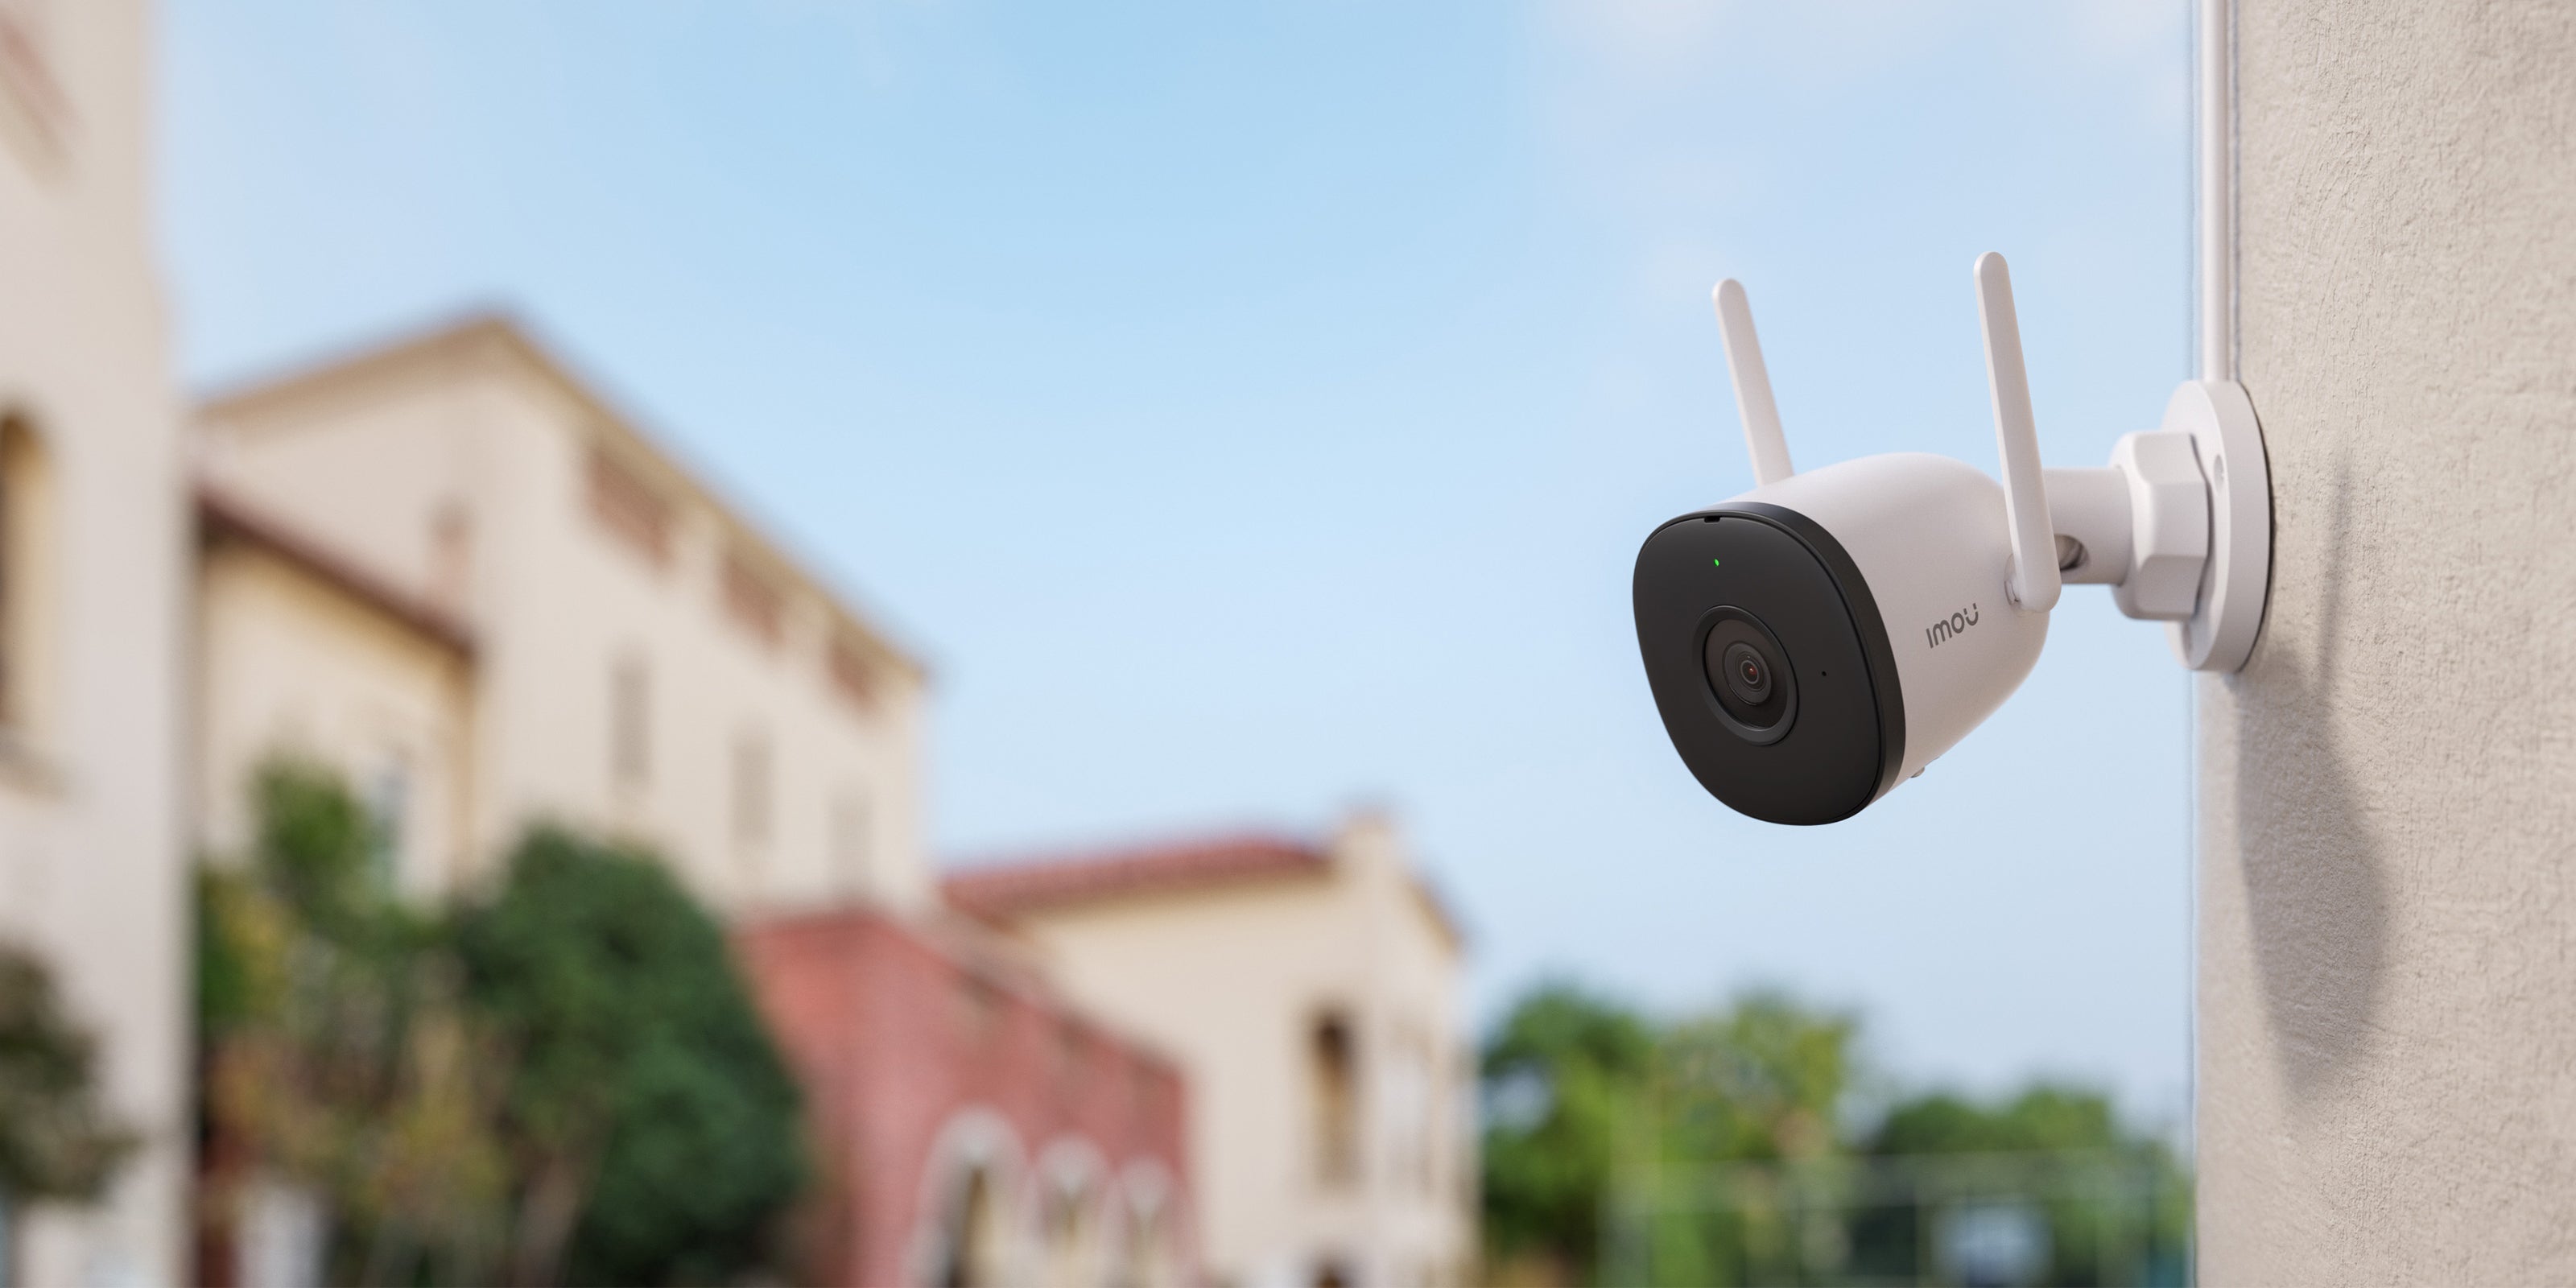 Test Imou Bullet 2E : une caméra de surveillance Wifi ou filaire à prix  tout doux - CNET France